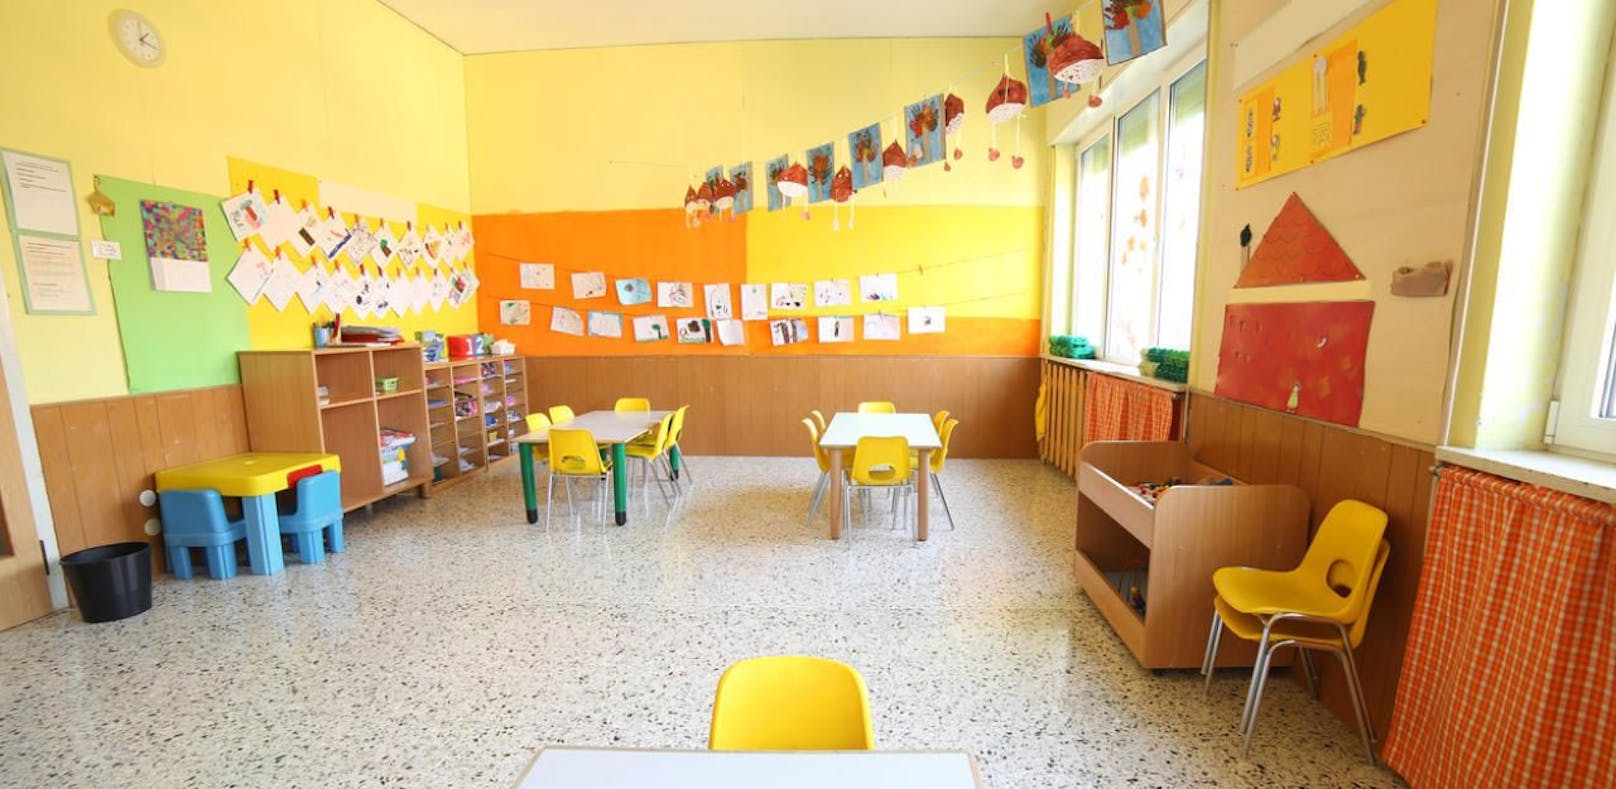 Schwere Vorwürfe gegen eine Pädagogin eines burgenländischen Kindergartens. (Symbolfoto)